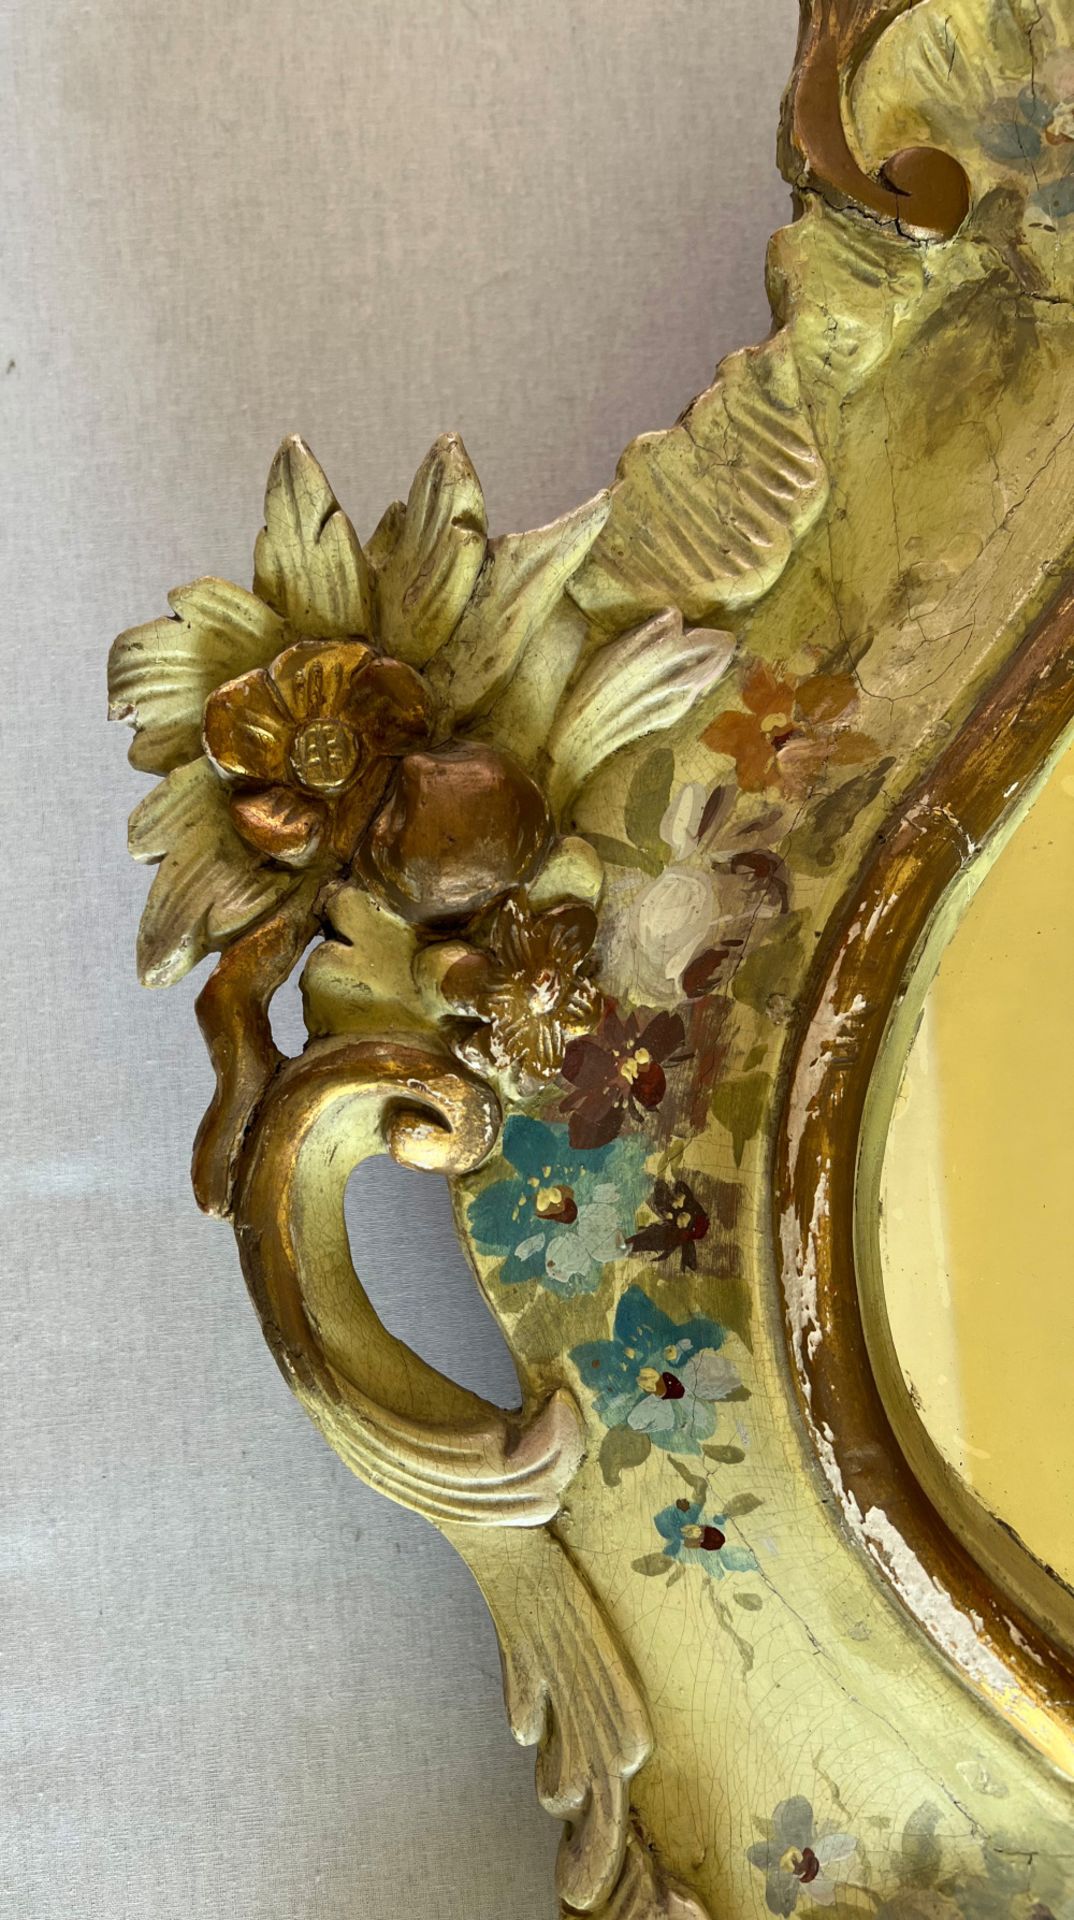 Barockspiegel mit Floralmalerei, Holz, farbig gefasst, Schlossmöbel, Altersspuren, 190 x 107 cm. - Bild 7 aus 11